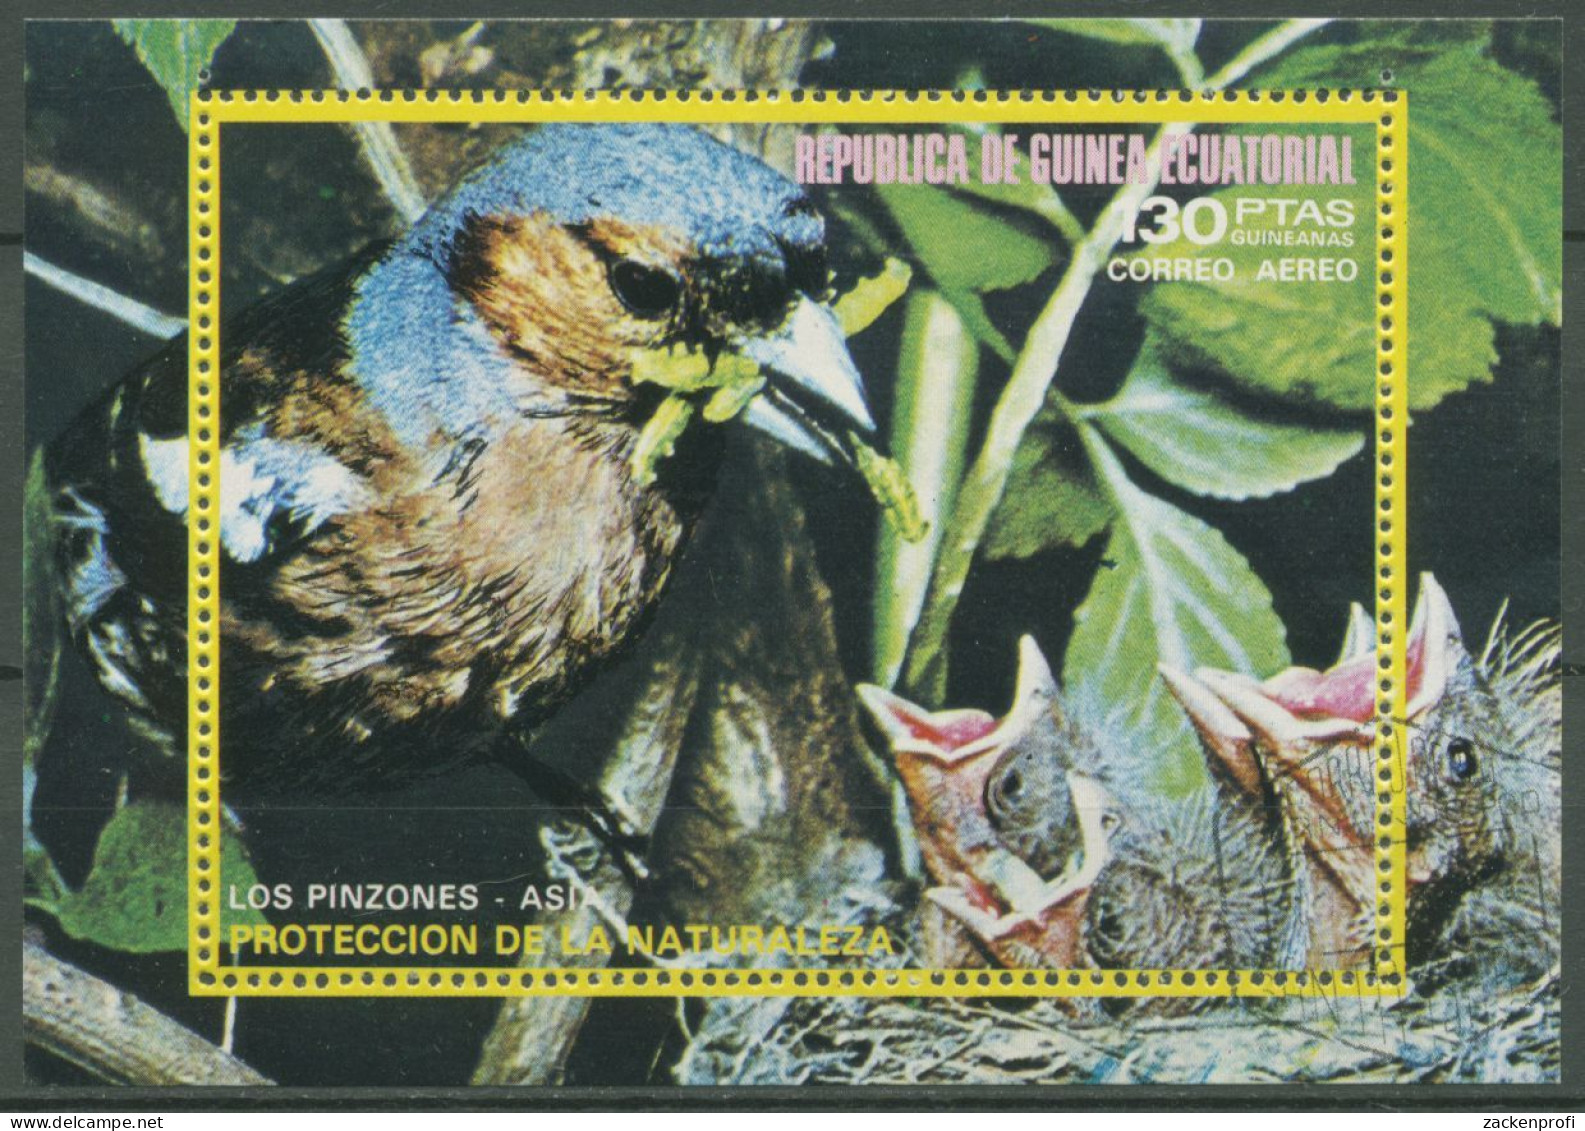 Äquatorialguinea 1976 Tiere Asiatische Vögel Block 240 Gestempelt (C62592) - Äquatorial-Guinea